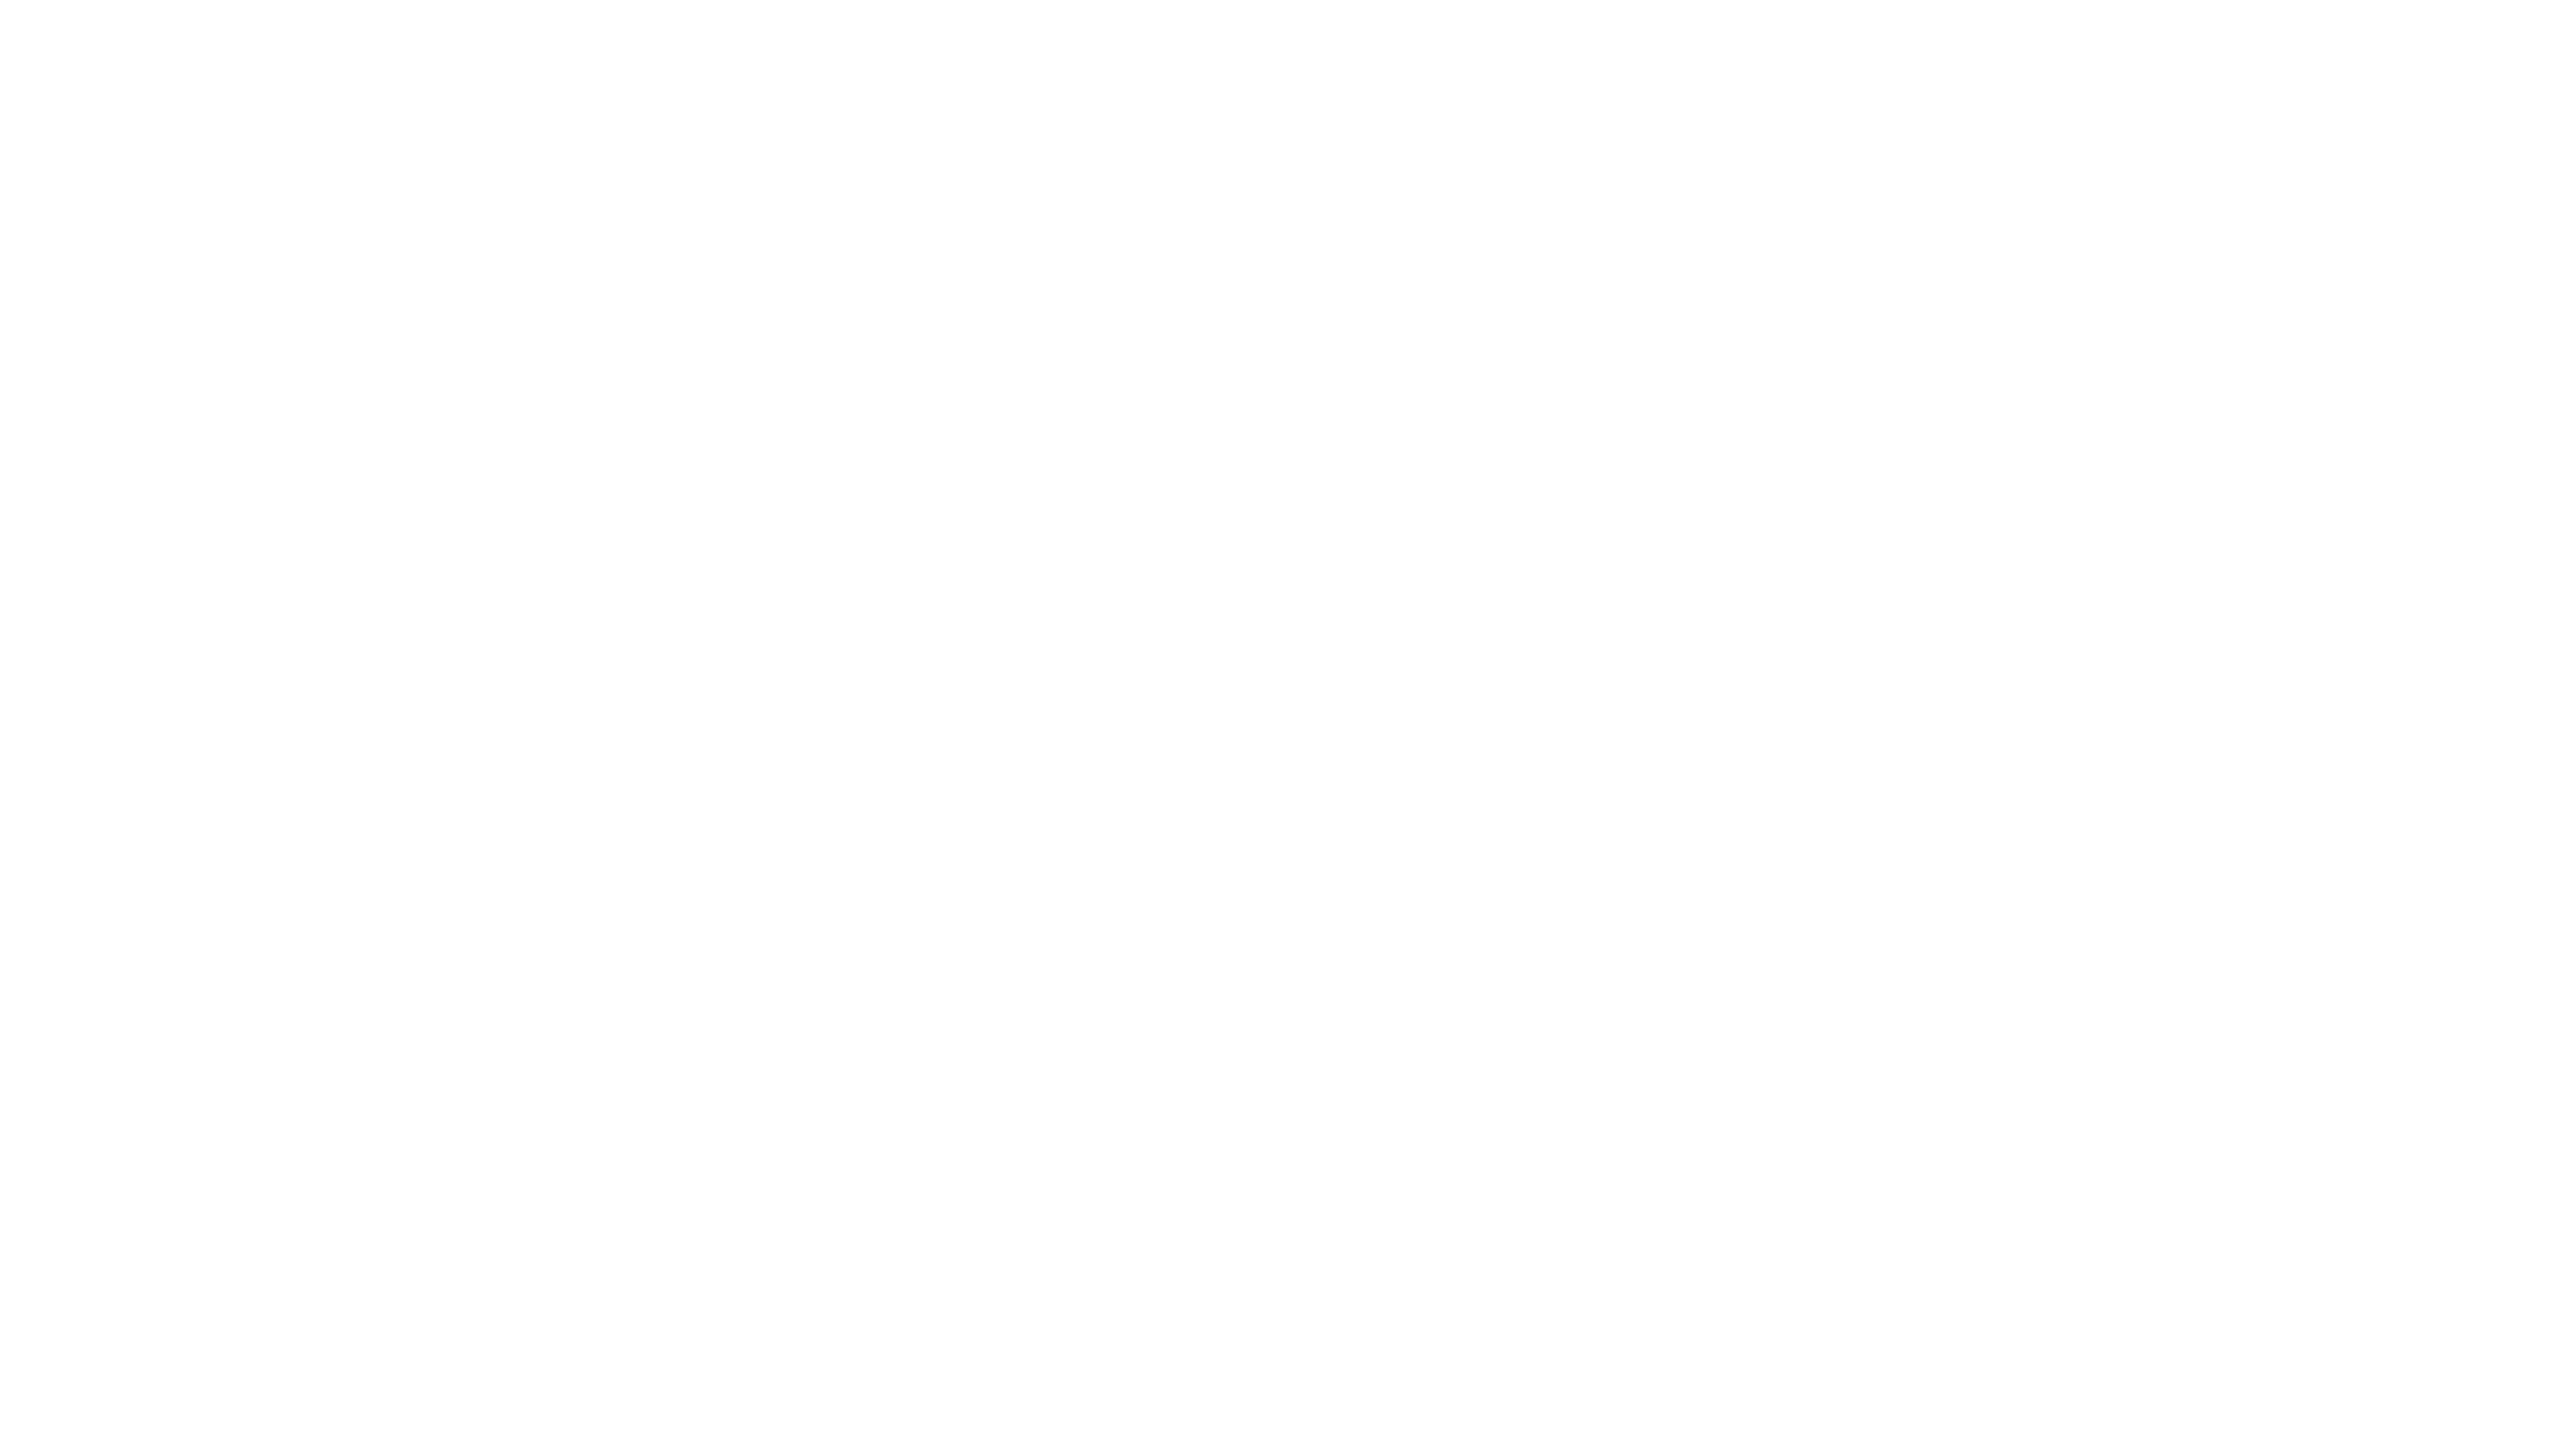 antha prerna foundation logo